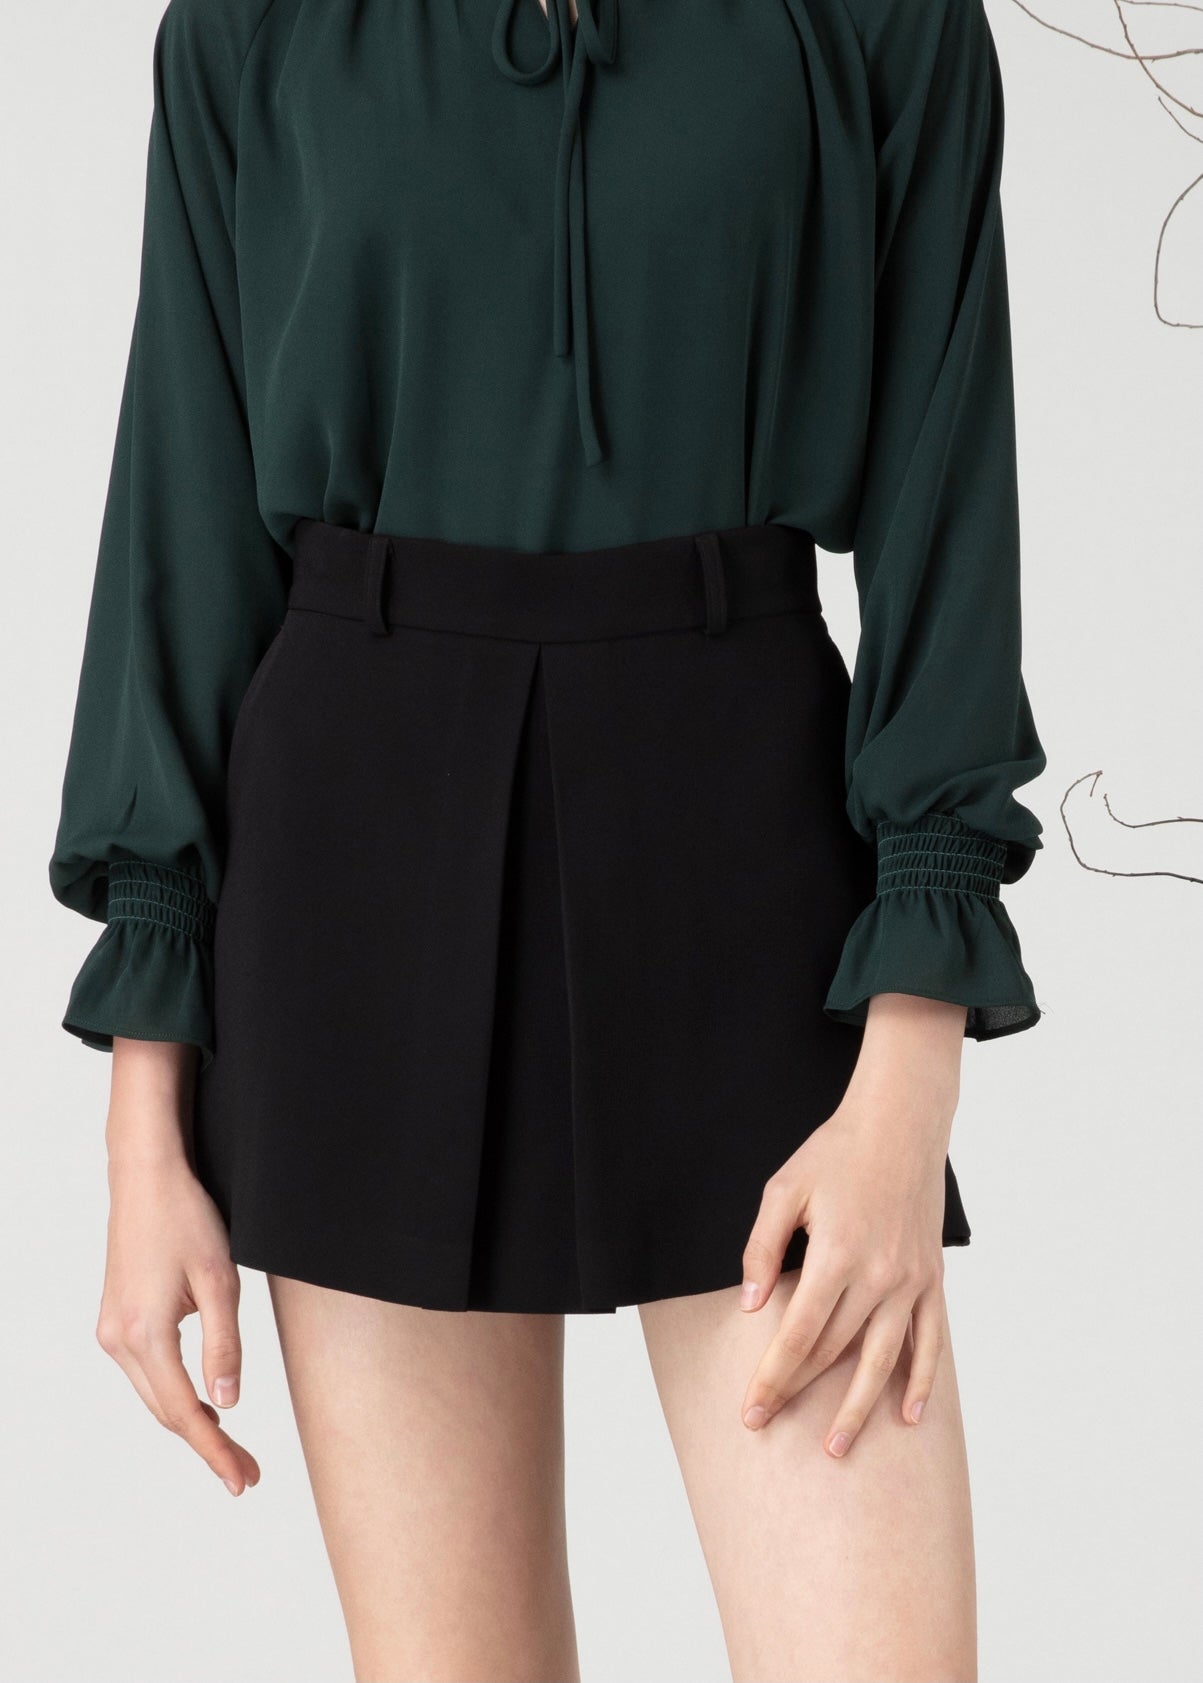 Short skirt in black colour